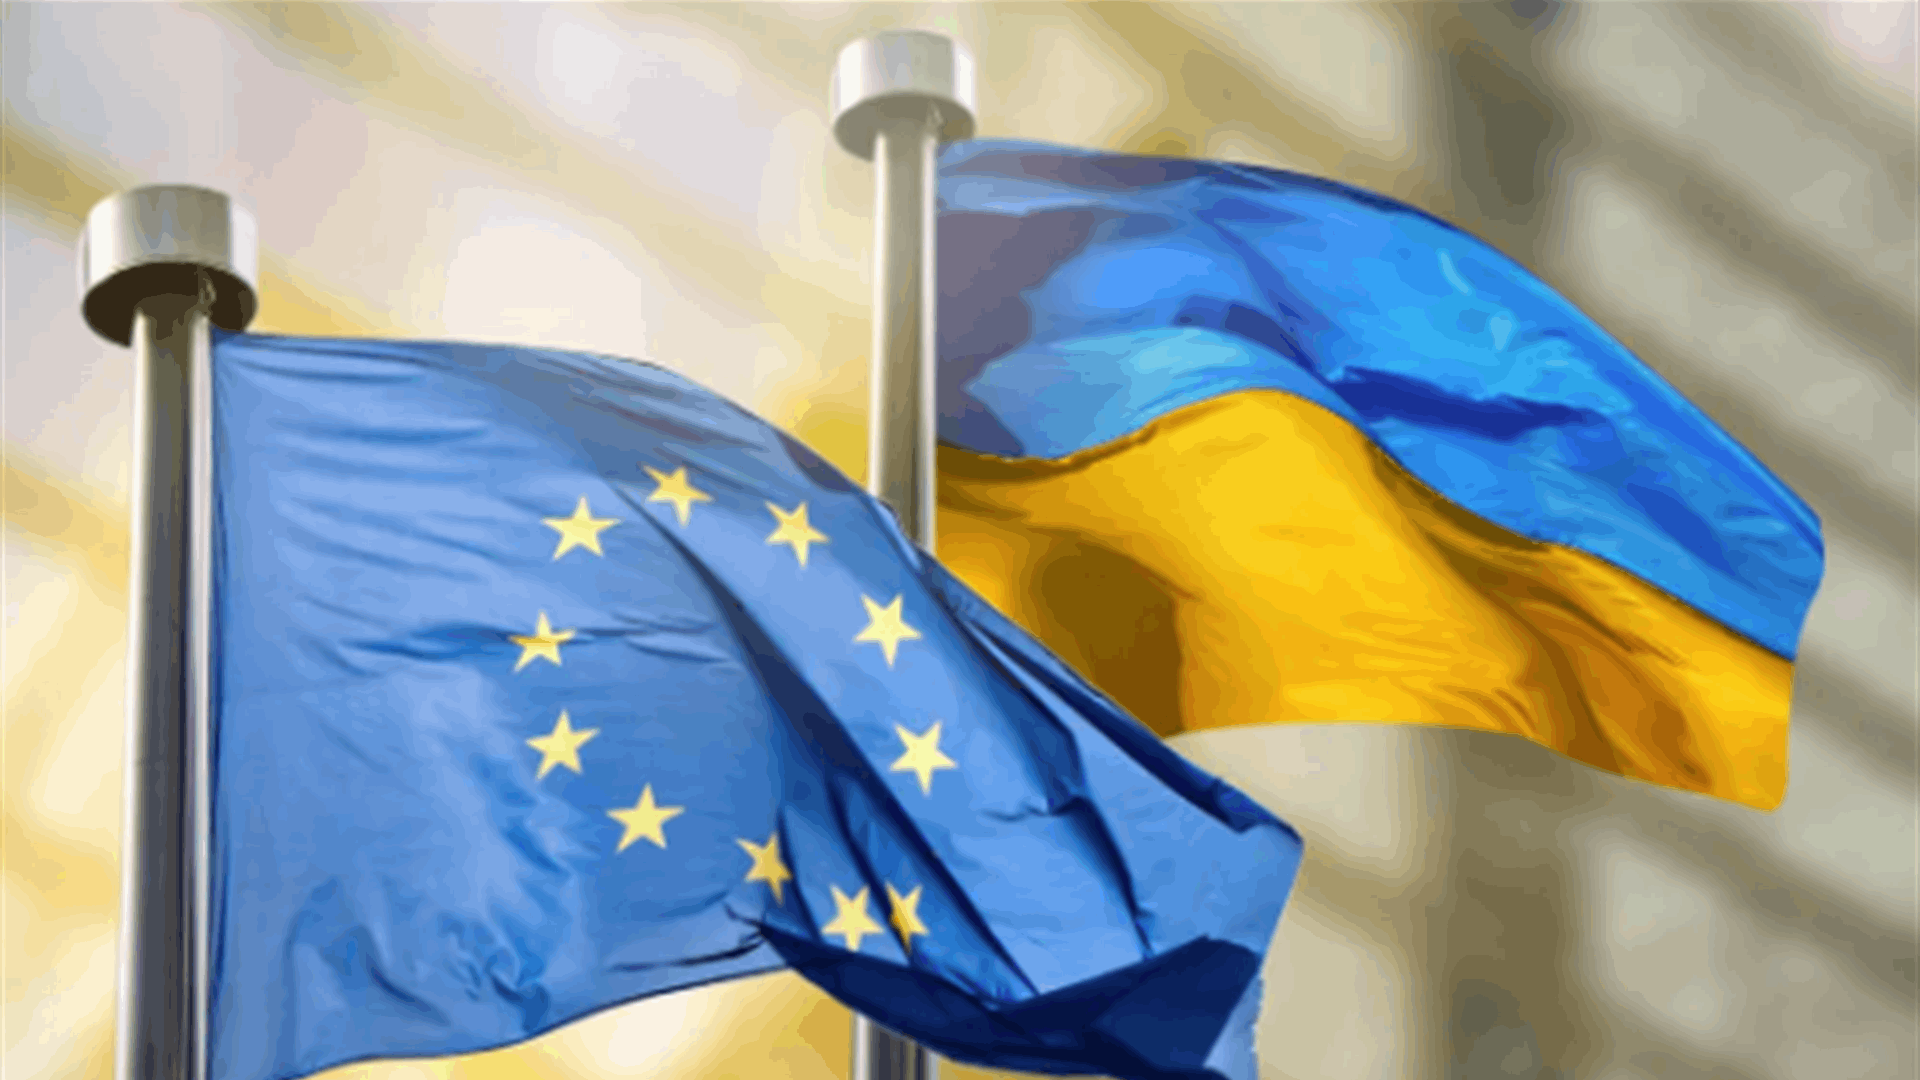 أوكرنيا تعوّل على قرارات إيجابية للاتحاد الأوروبيّ بعد الانتخابات الأوروبية